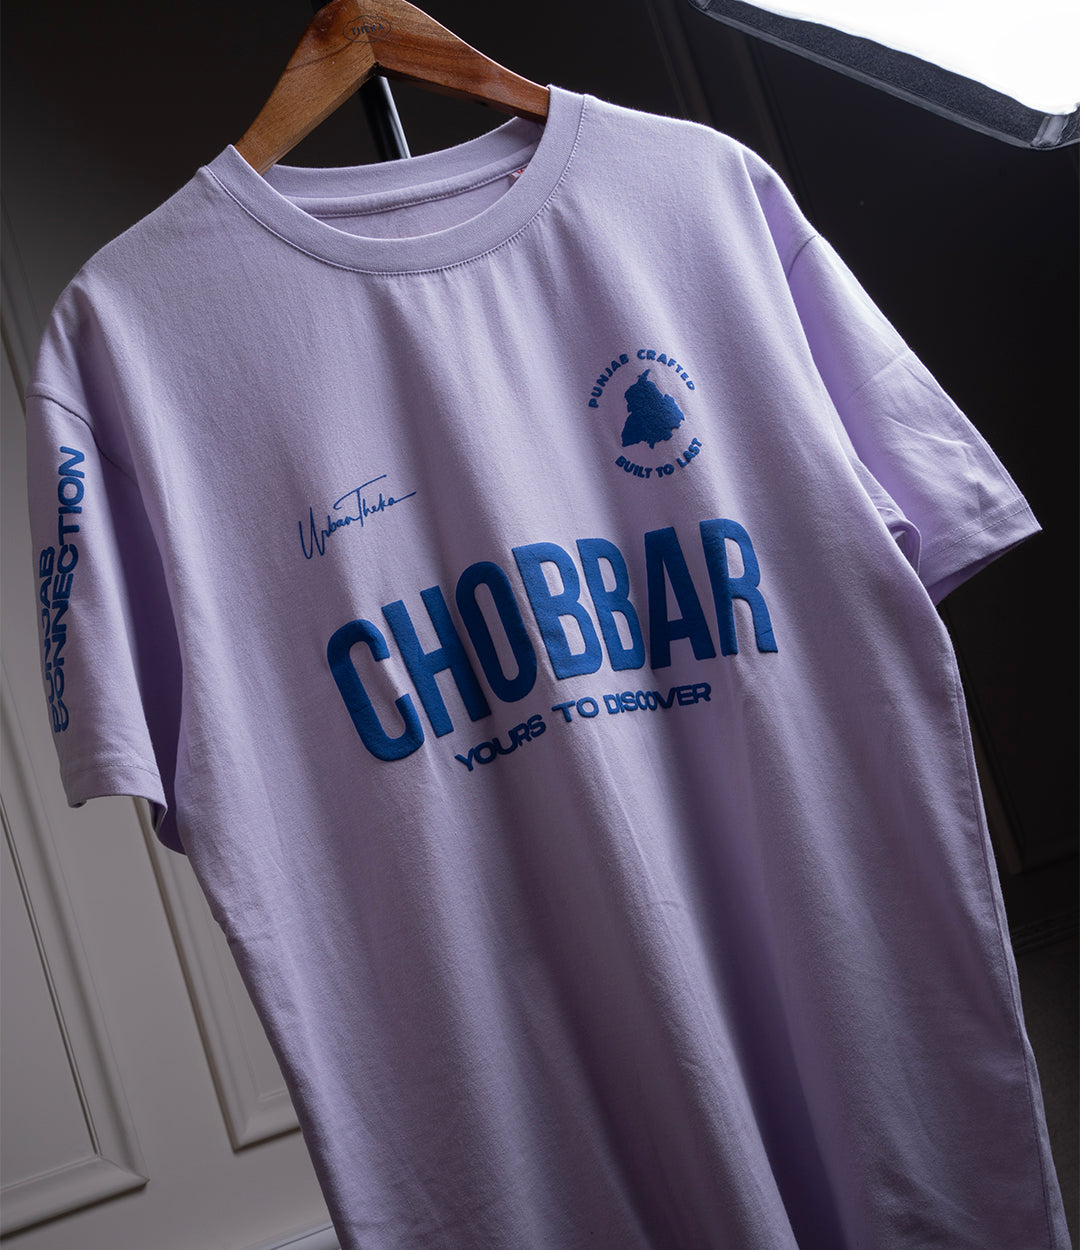 Chobbar Drop Shoulders White T-shirt